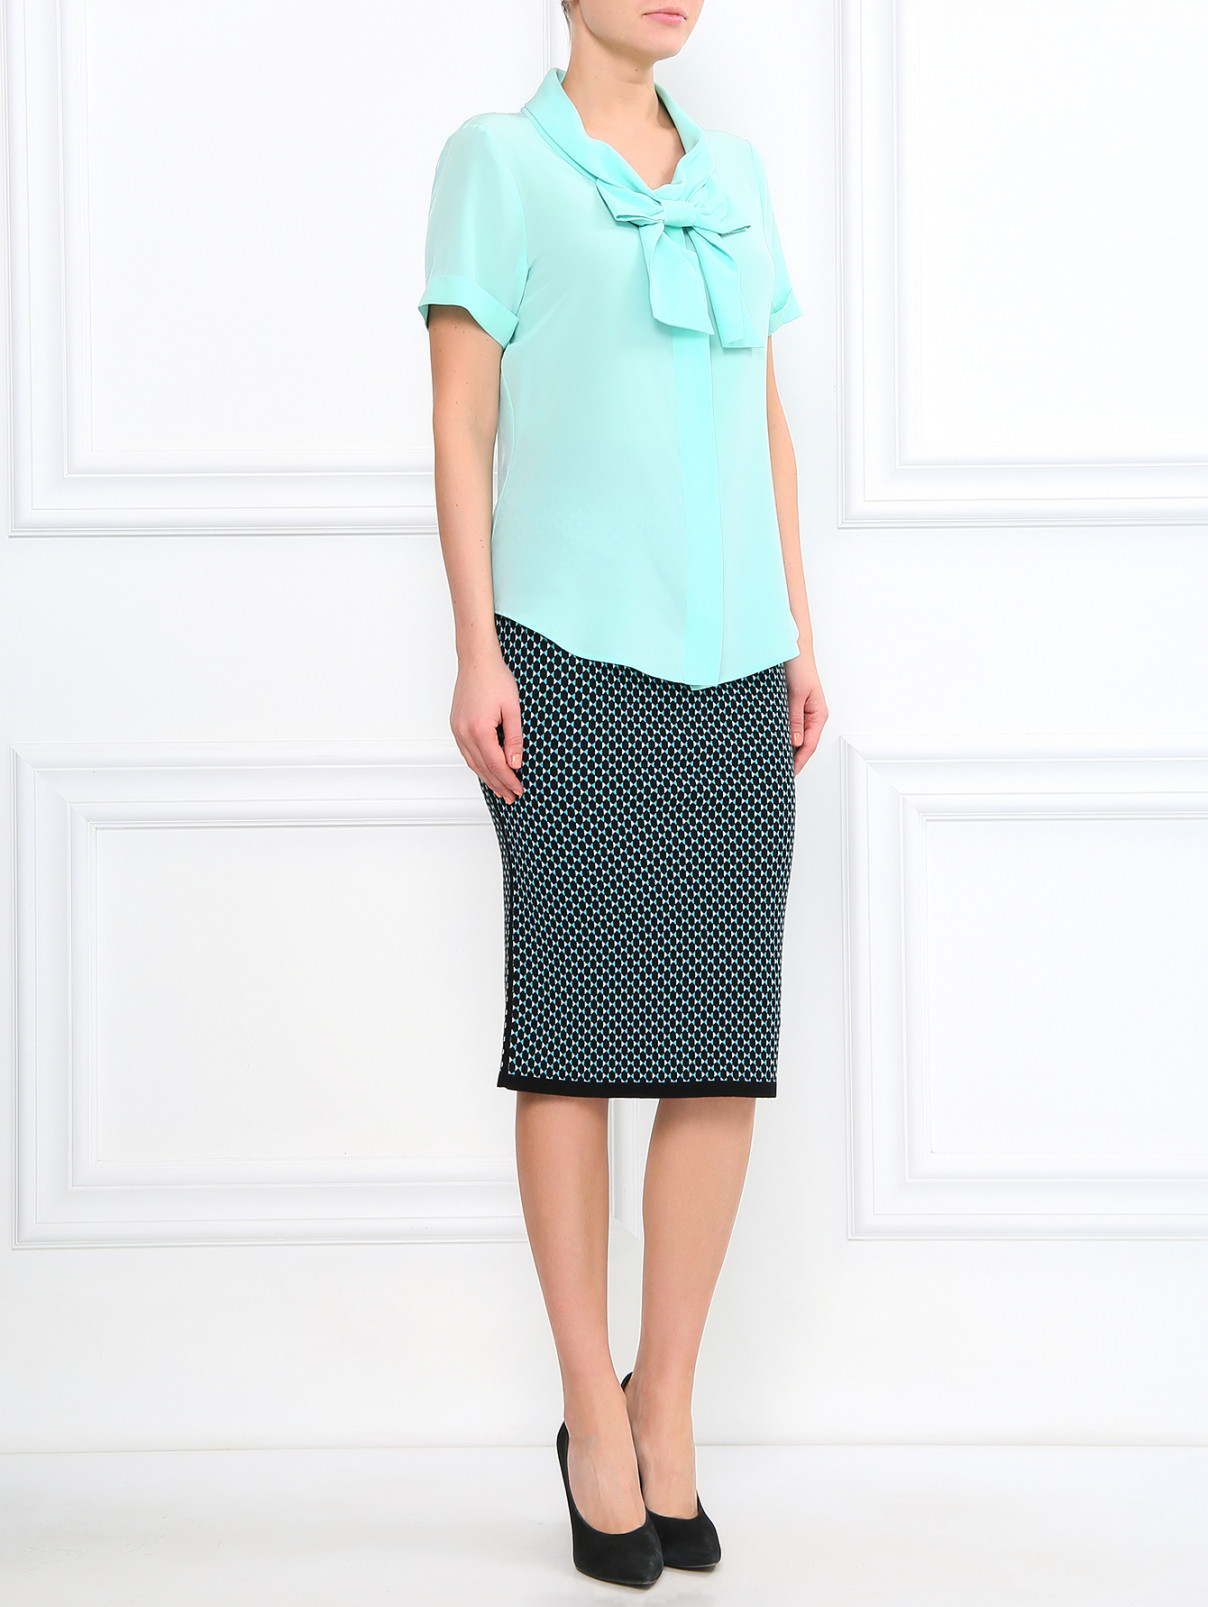 Блуза из шелка с декоративным бантом Moschino Couture  –  Модель Общий вид  – Цвет:  Зеленый